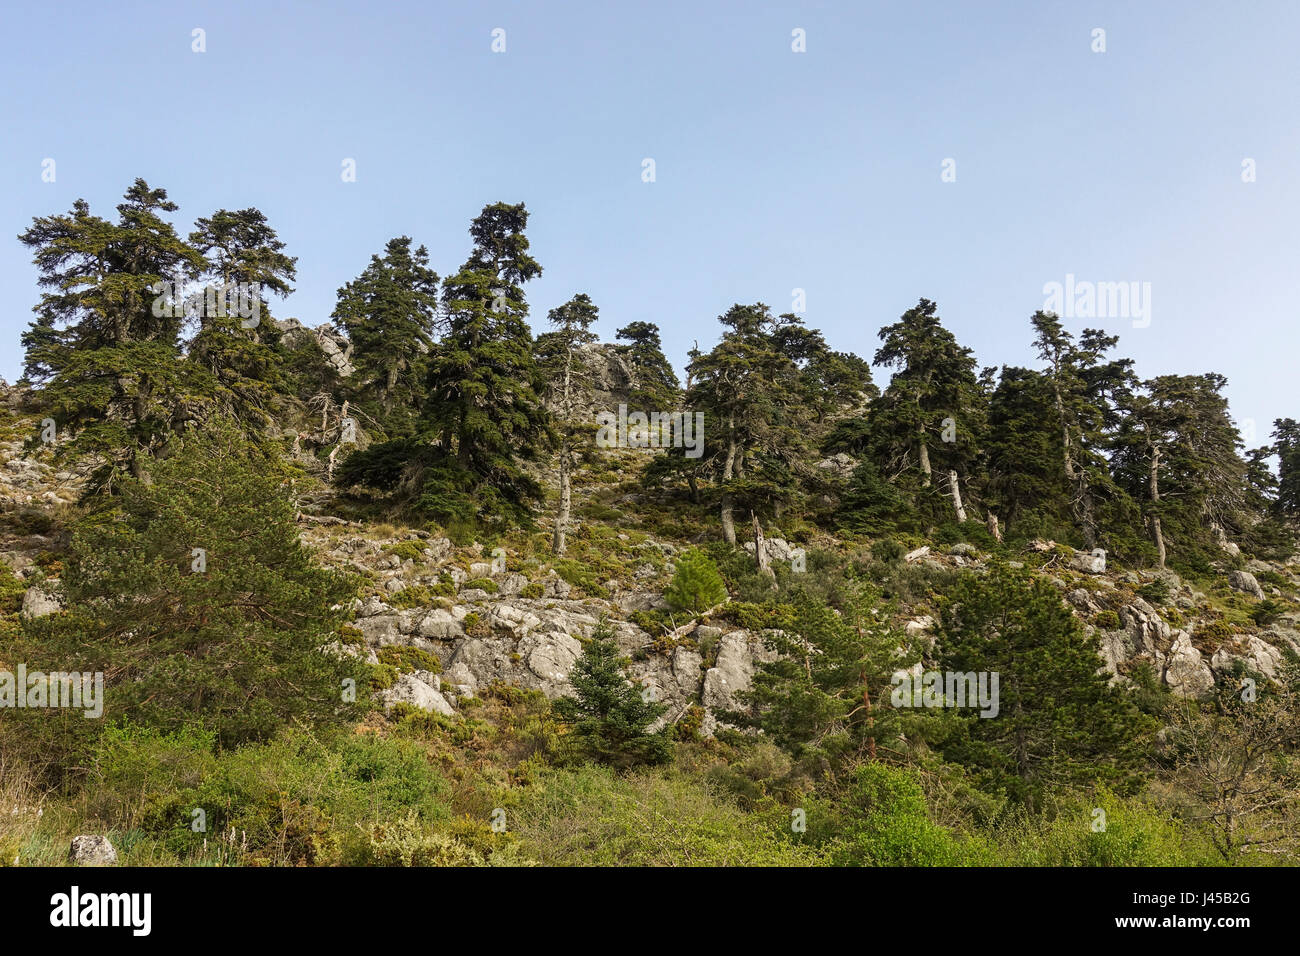 Spanish fir, Abies pinsapo in natural park Sierra de las Nieves , Andalusia, Spain Stock Photo